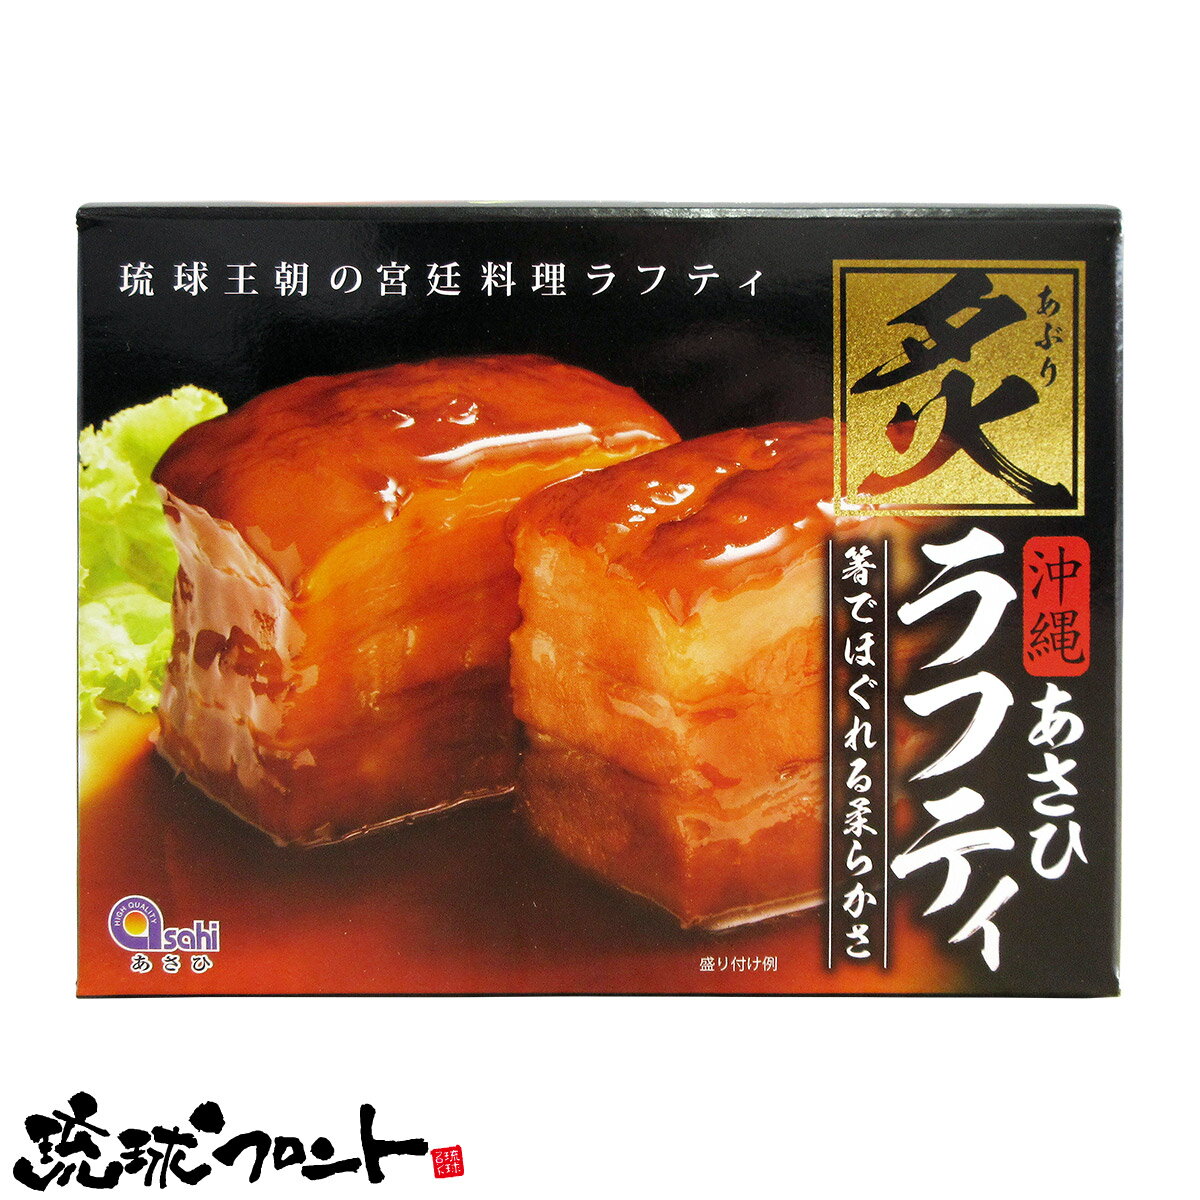 ラフティは、沖縄の伝統的な豚肉料理の一品として広く親しまれています。 本品「炙りラフティ」は、皮付きの豚肉(バラ肉)に炙りを入れ角切りにし、じっくりと煮込み、とろけるように柔らかく仕上げました。 【名　称】豚肉味付け煮込み(ラフティ) 【内 容 量】350g（2個入り） 【原材料名】豚肉、砂糖、醤油、オニオンソテー、発酵調味料、でん粉、水あめ、食塩、動植物エキス、香辛料、たん白加水還元分、泡盛、鰹節エキス、還元でん粉糖化物、鰹節粉末／ソルビット、調味料（アミノ酸等）、酸味料、増粘剤（キサンタンガム）、増粘多糖類、甘味料（カンゾウ）、リン酸塩（Na）、カゼインNa、乳化剤、ビタミンB1、酸化防止剤（ビタミンE）、（一部に豚肉・大豆・小麦・乳成分・牛肉・鶏肉・ゼラチンを含む。） 【保存方法】直射日光、高温多湿を避け常温で保存 【料理方法】袋のまま沸騰させたお湯に入れ、そのまま弱火で10～12分温めてからタレごとお皿に移し、お召し上がりください。 ※開封後は冷蔵庫で保管し、出来るだけ早めにお召し上がりください。 ※炙った際にできる焦げ目が浮いていたり、付着している部分がありますが、品質には問題ございません。 【ワード】沖縄 お土産 あさひ 炙りラフティ 350g 2個入り ラフテー らふてー らふてぃ レトルトパウチ食品 皮付き 豚の角煮